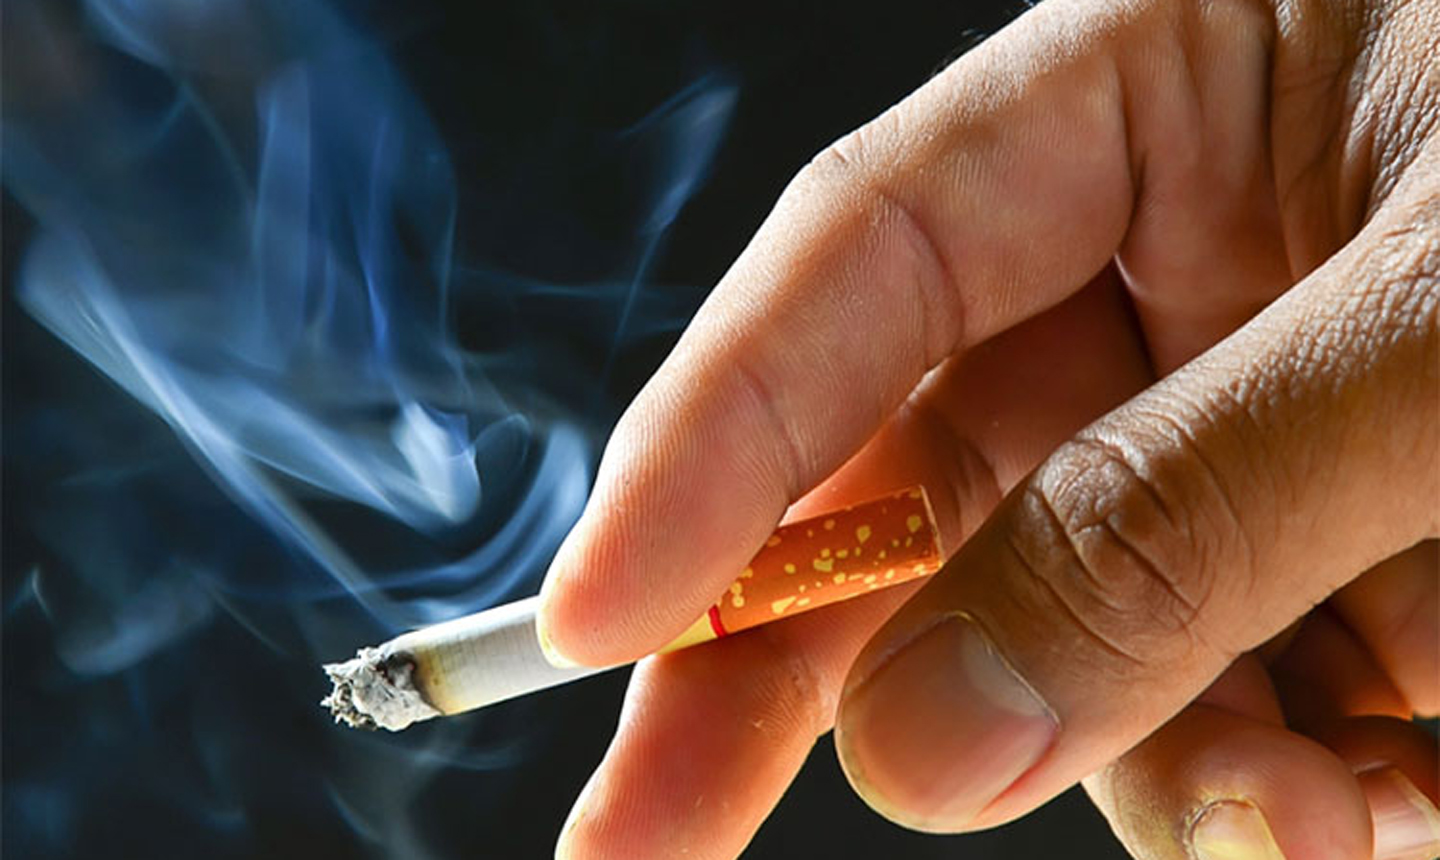   Hút thuốc lá làm tăng nguy cơ bệnh Basedow  